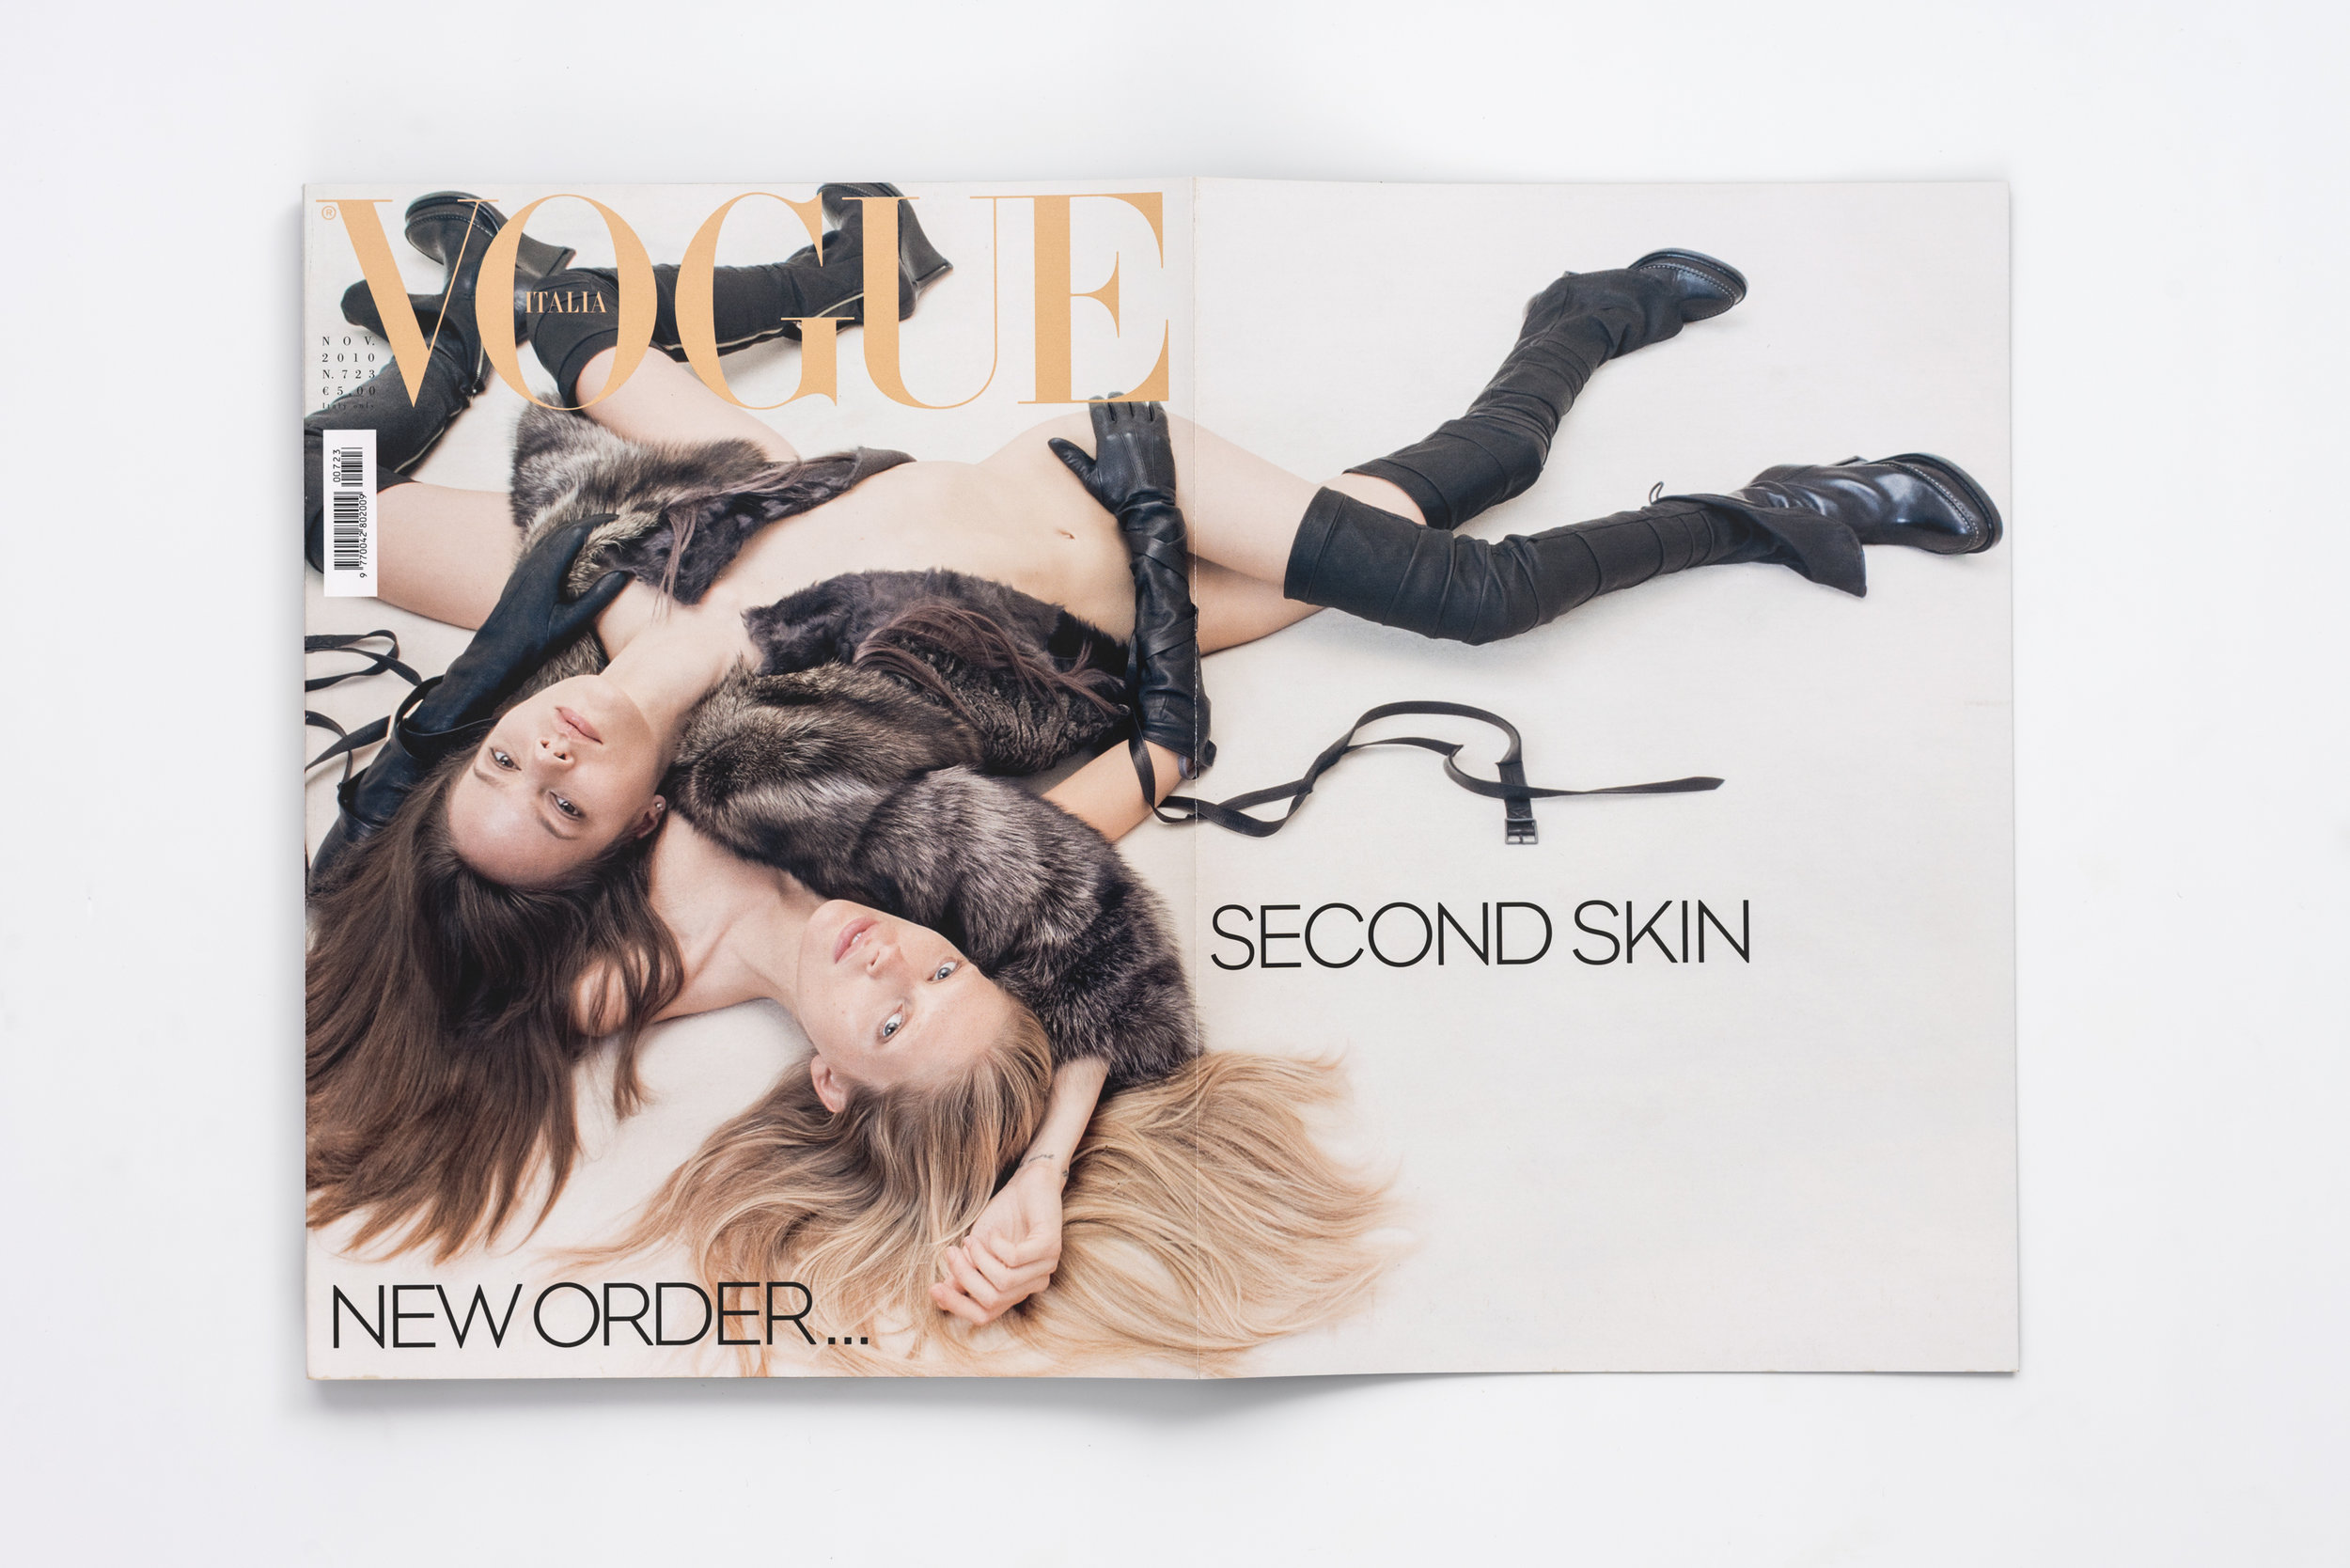 Iselin Steiro_Steven Meisel_Vogue Italia cover spread_November -10.jpg